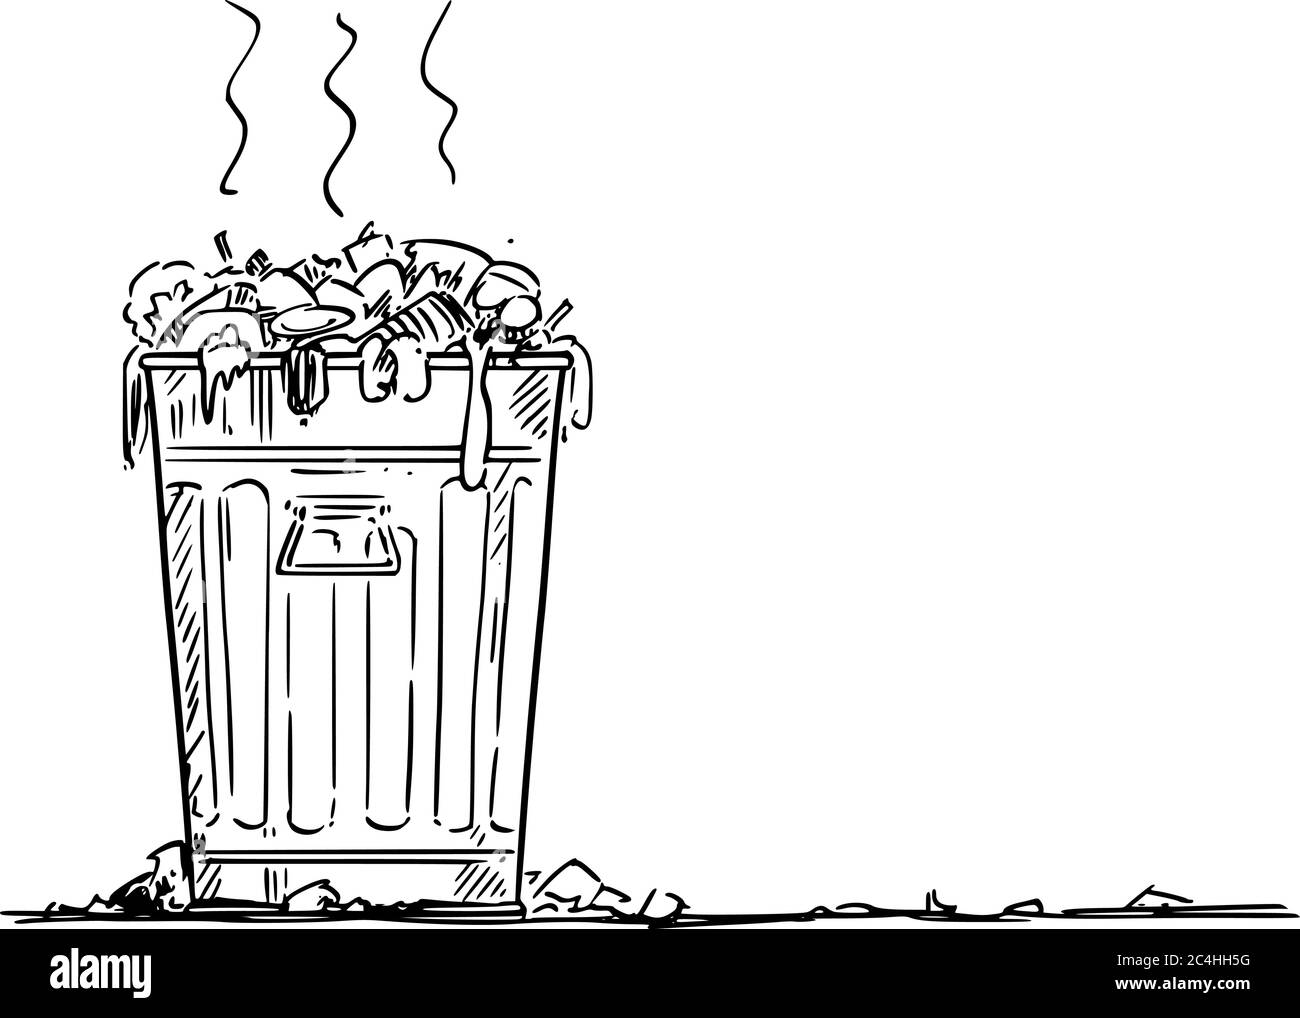 Vektor-Cartoon-Zeichnung konzeptionelle Illustration von schmutzigen Abfallbehälter, Mülleimer oder Mülleimer. Umweltkonzept. Stock Vektor